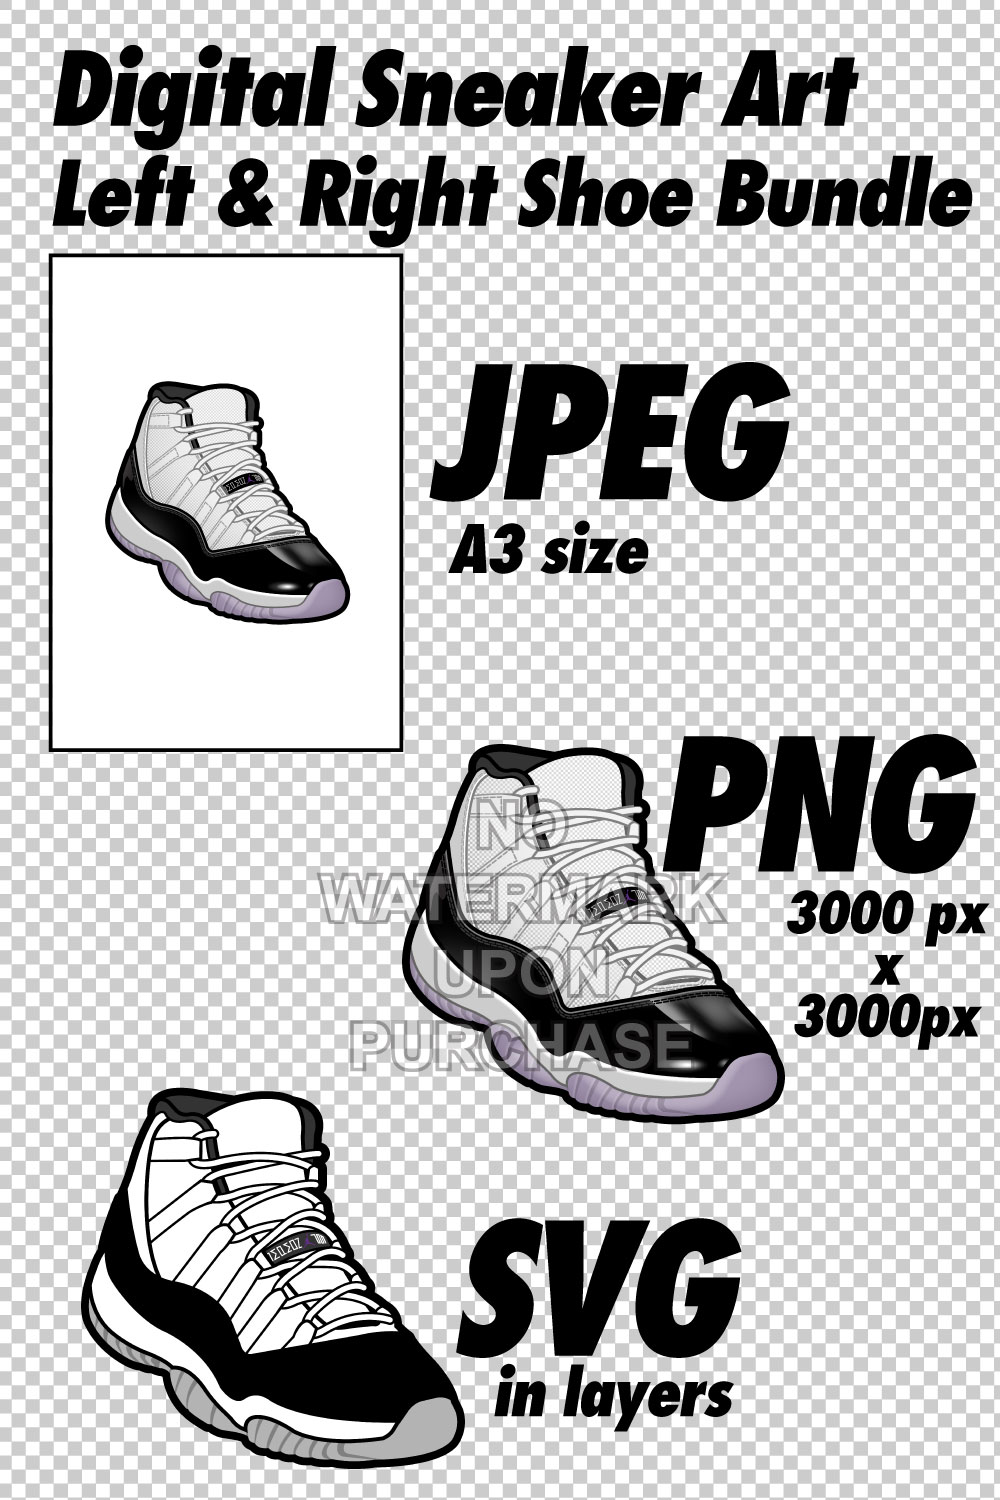 Air Jordan 11 Concords JPEG PNG SVG Sneaker Art right & left shoe bundle pinterest preview image.